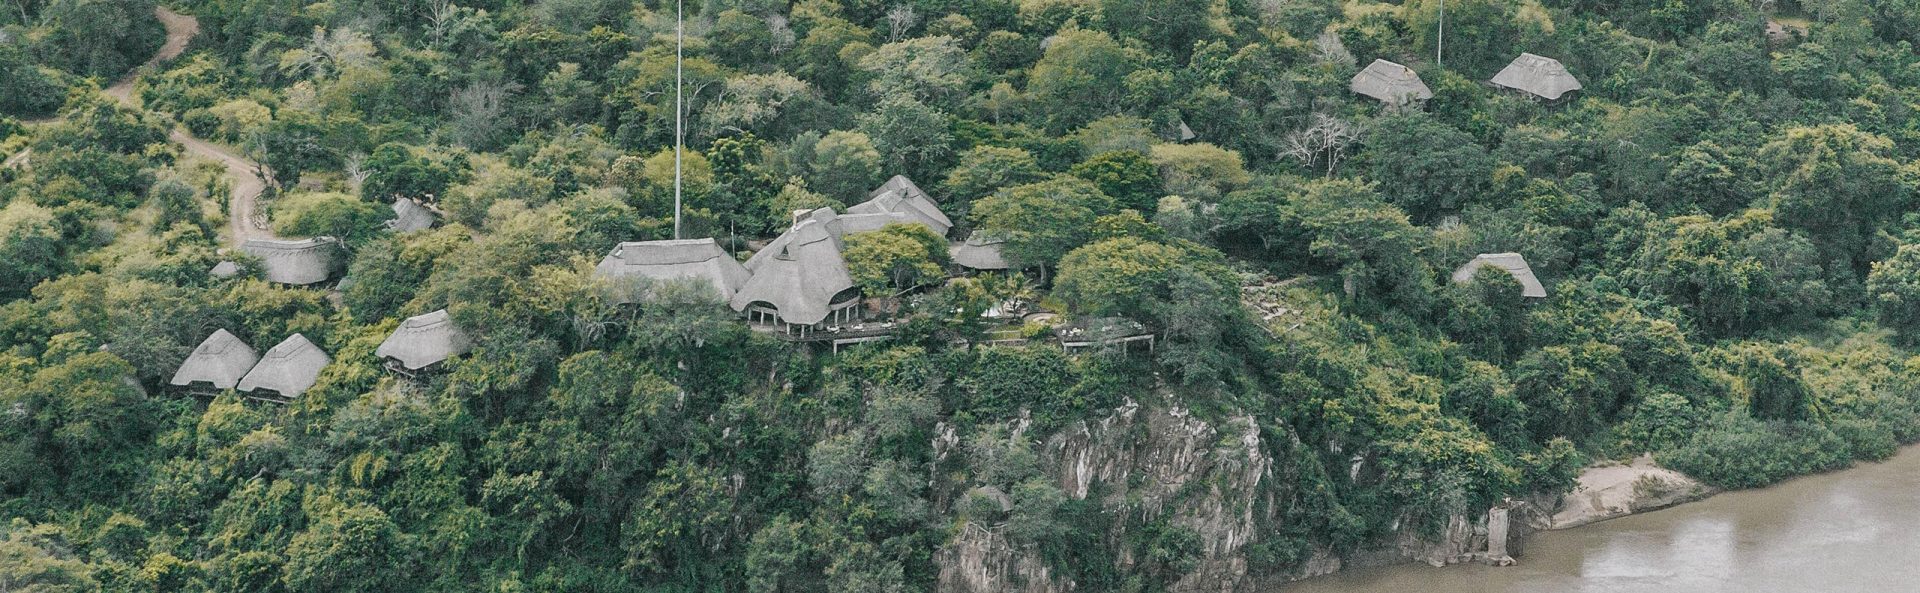 Chilo Gorge Safari Lodge View